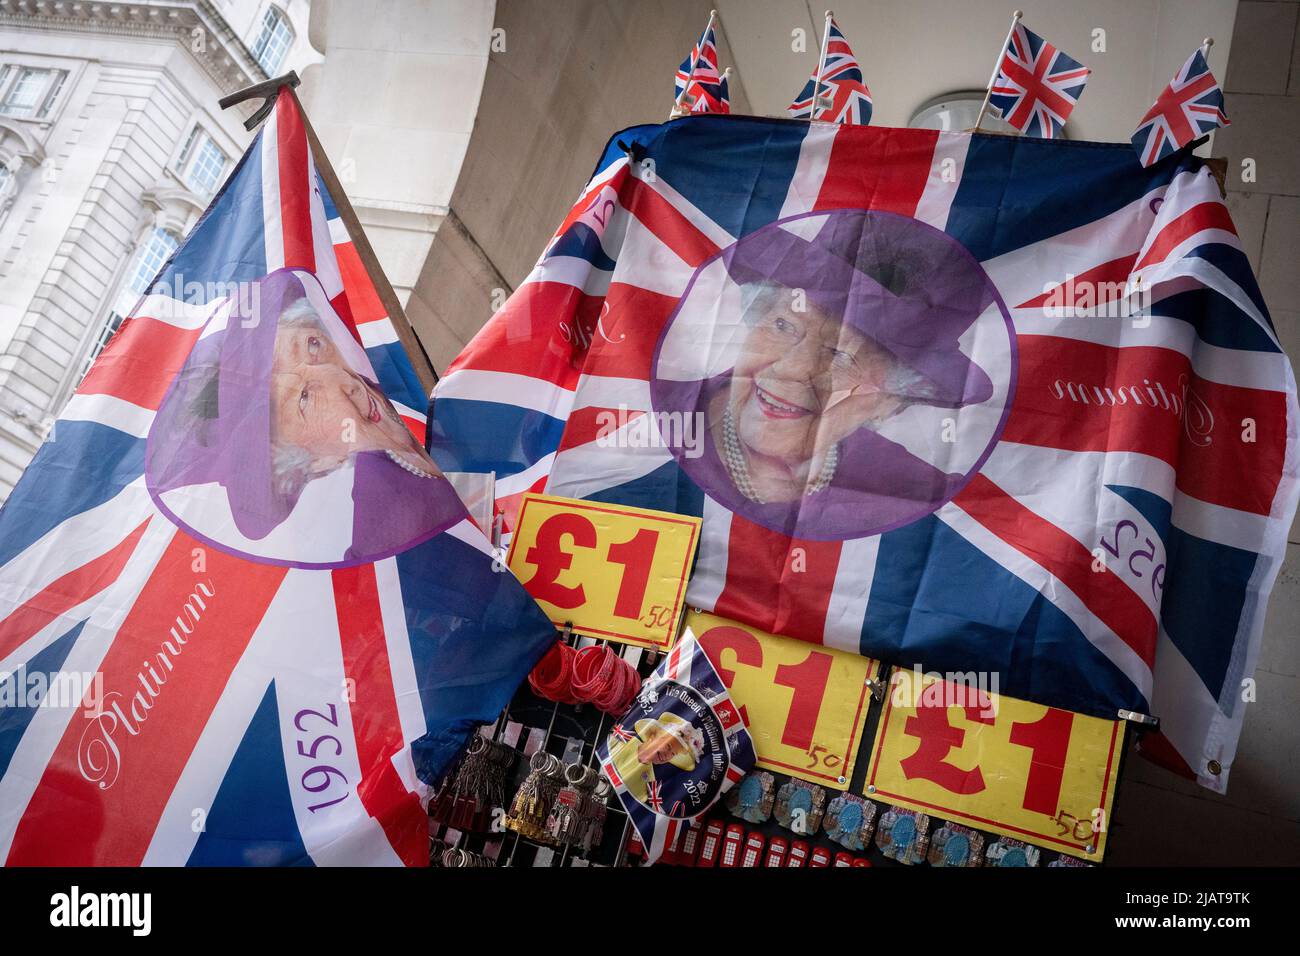 Königliche Flaggen und Merchandise mit der Queen sind im Piccadilly Circus erhältlich, während die Vorbereitungen für die Feierlichkeiten zum Platin-Jubiläum der Queen am 31.. Mai 2022 in London, England, fortgesetzt werden. Königin Elizabeth II. Steht seit 70 Jahren auf dem britischen Thron, die dienstälteste Monarchin der englischen Geschichte und Union Jack-Flaggen sind in der Woche vor dem Jubiläumswochenende überall im Land zu sehen. Stockfoto